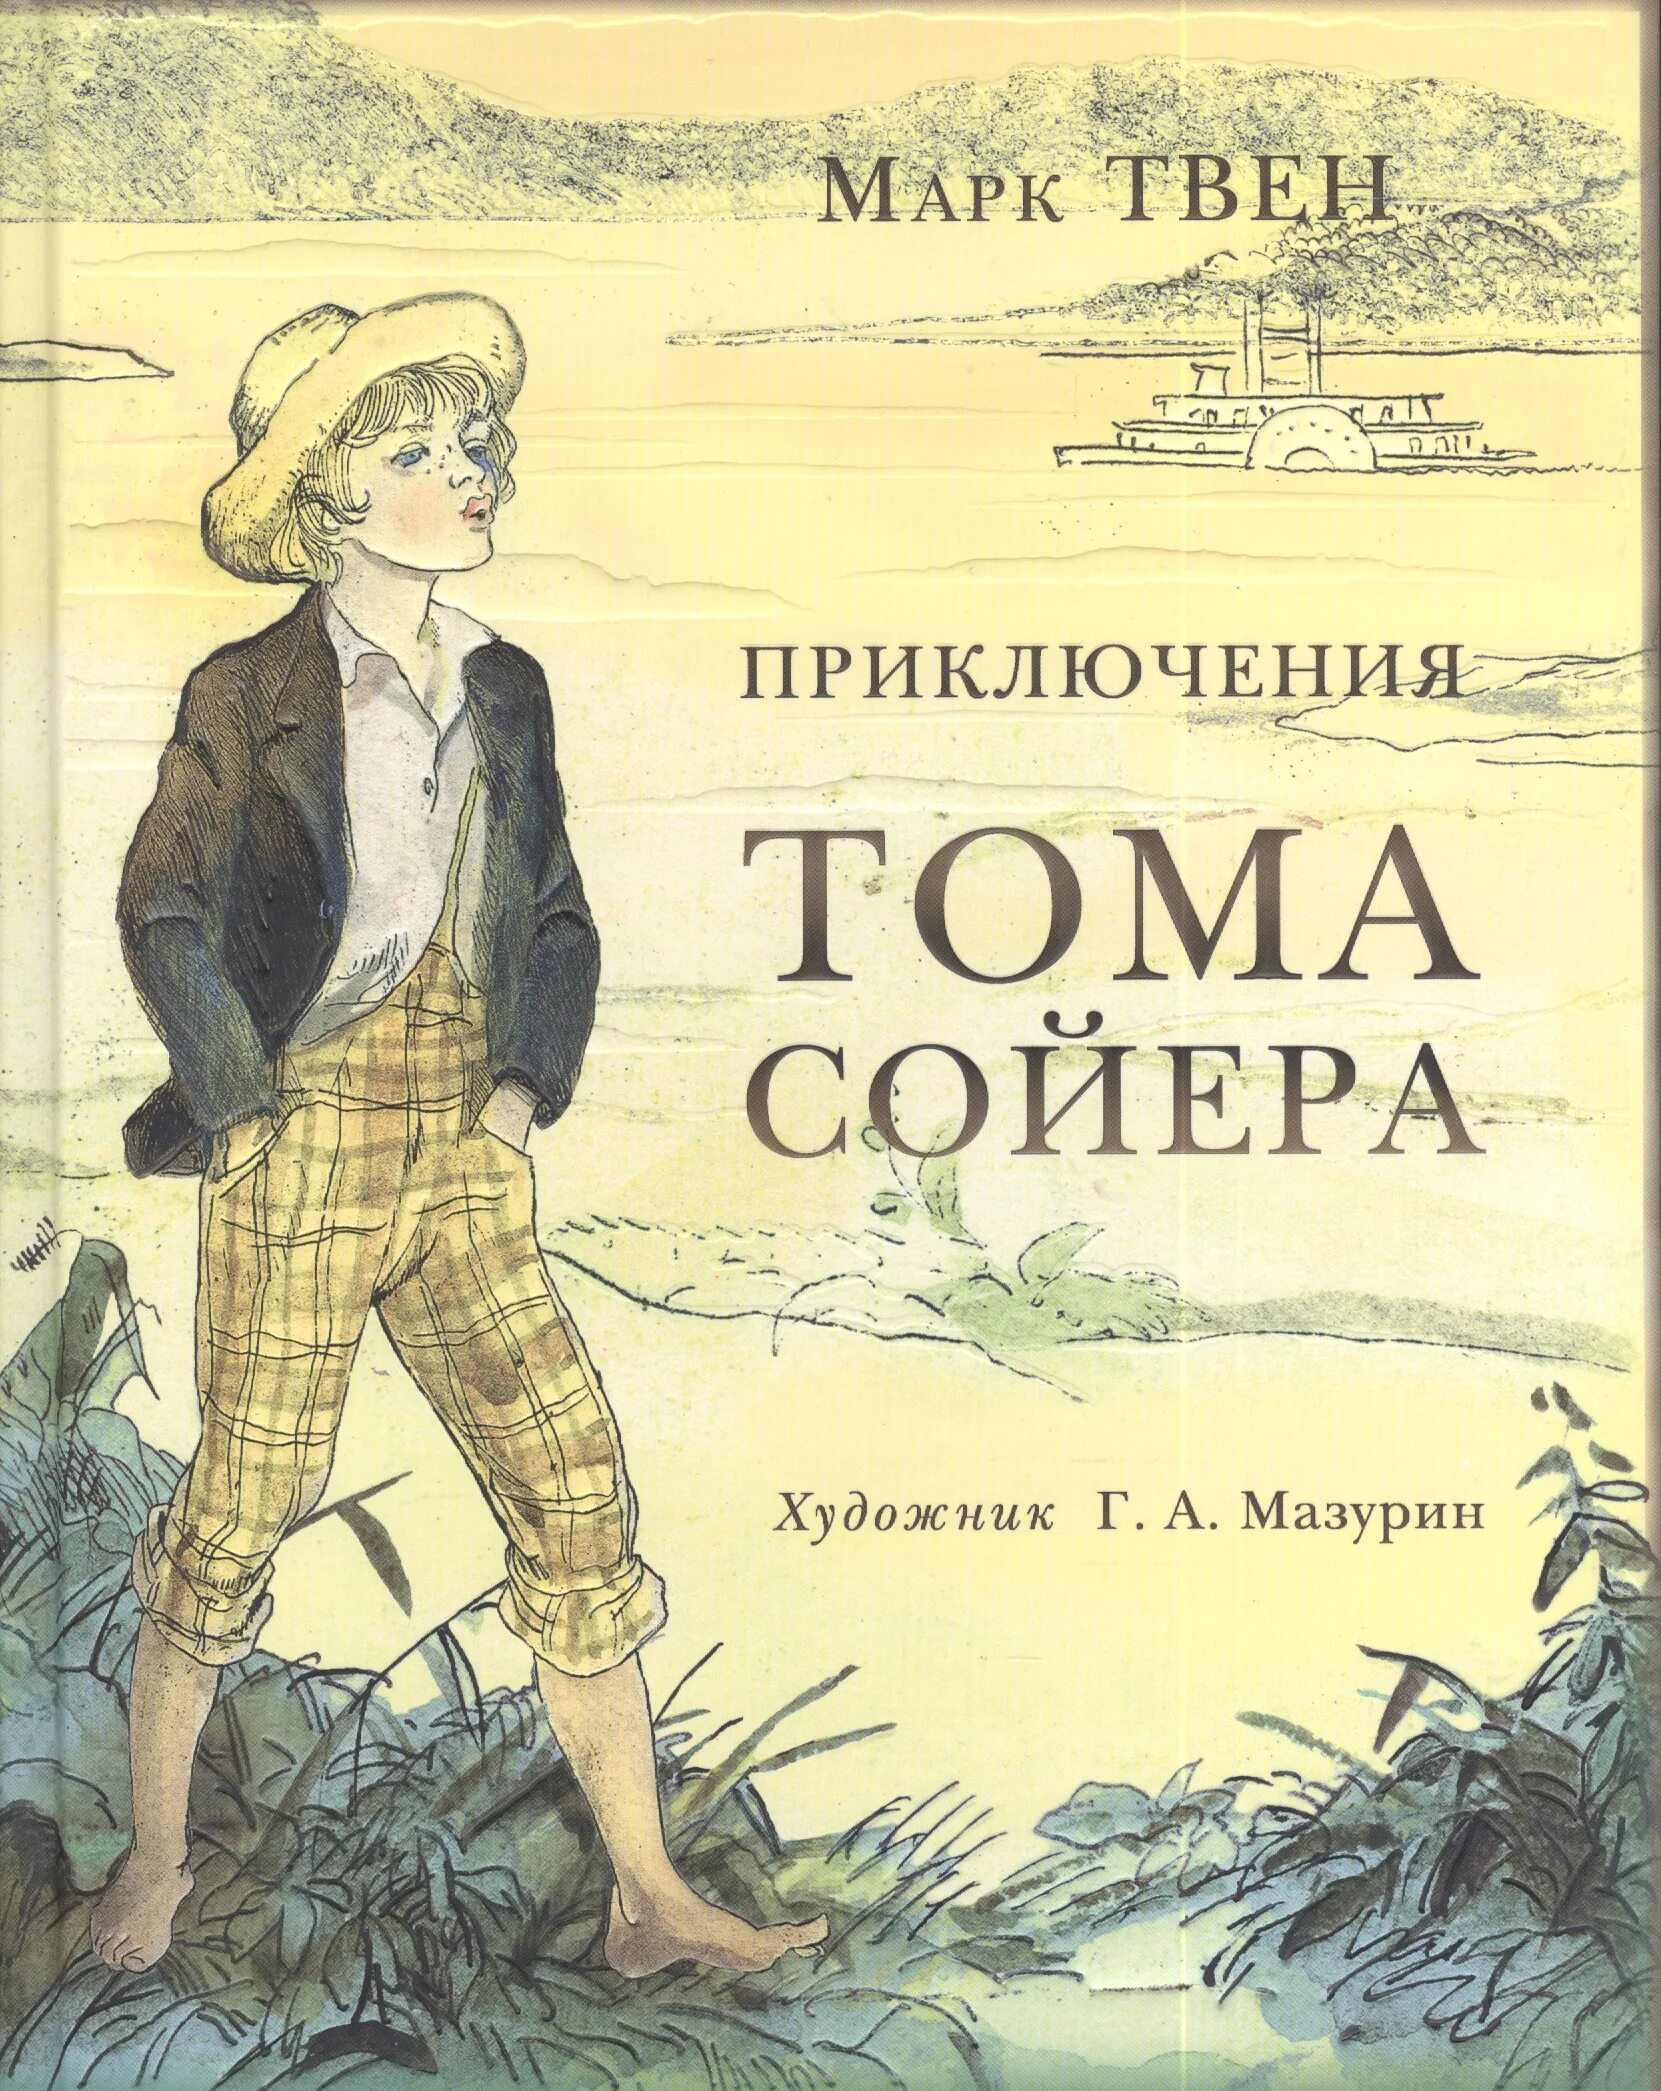 Приключения тома сойера по марку твену. Приключения Тома Сойера. 3 М Твен приключения Тома Сойера.